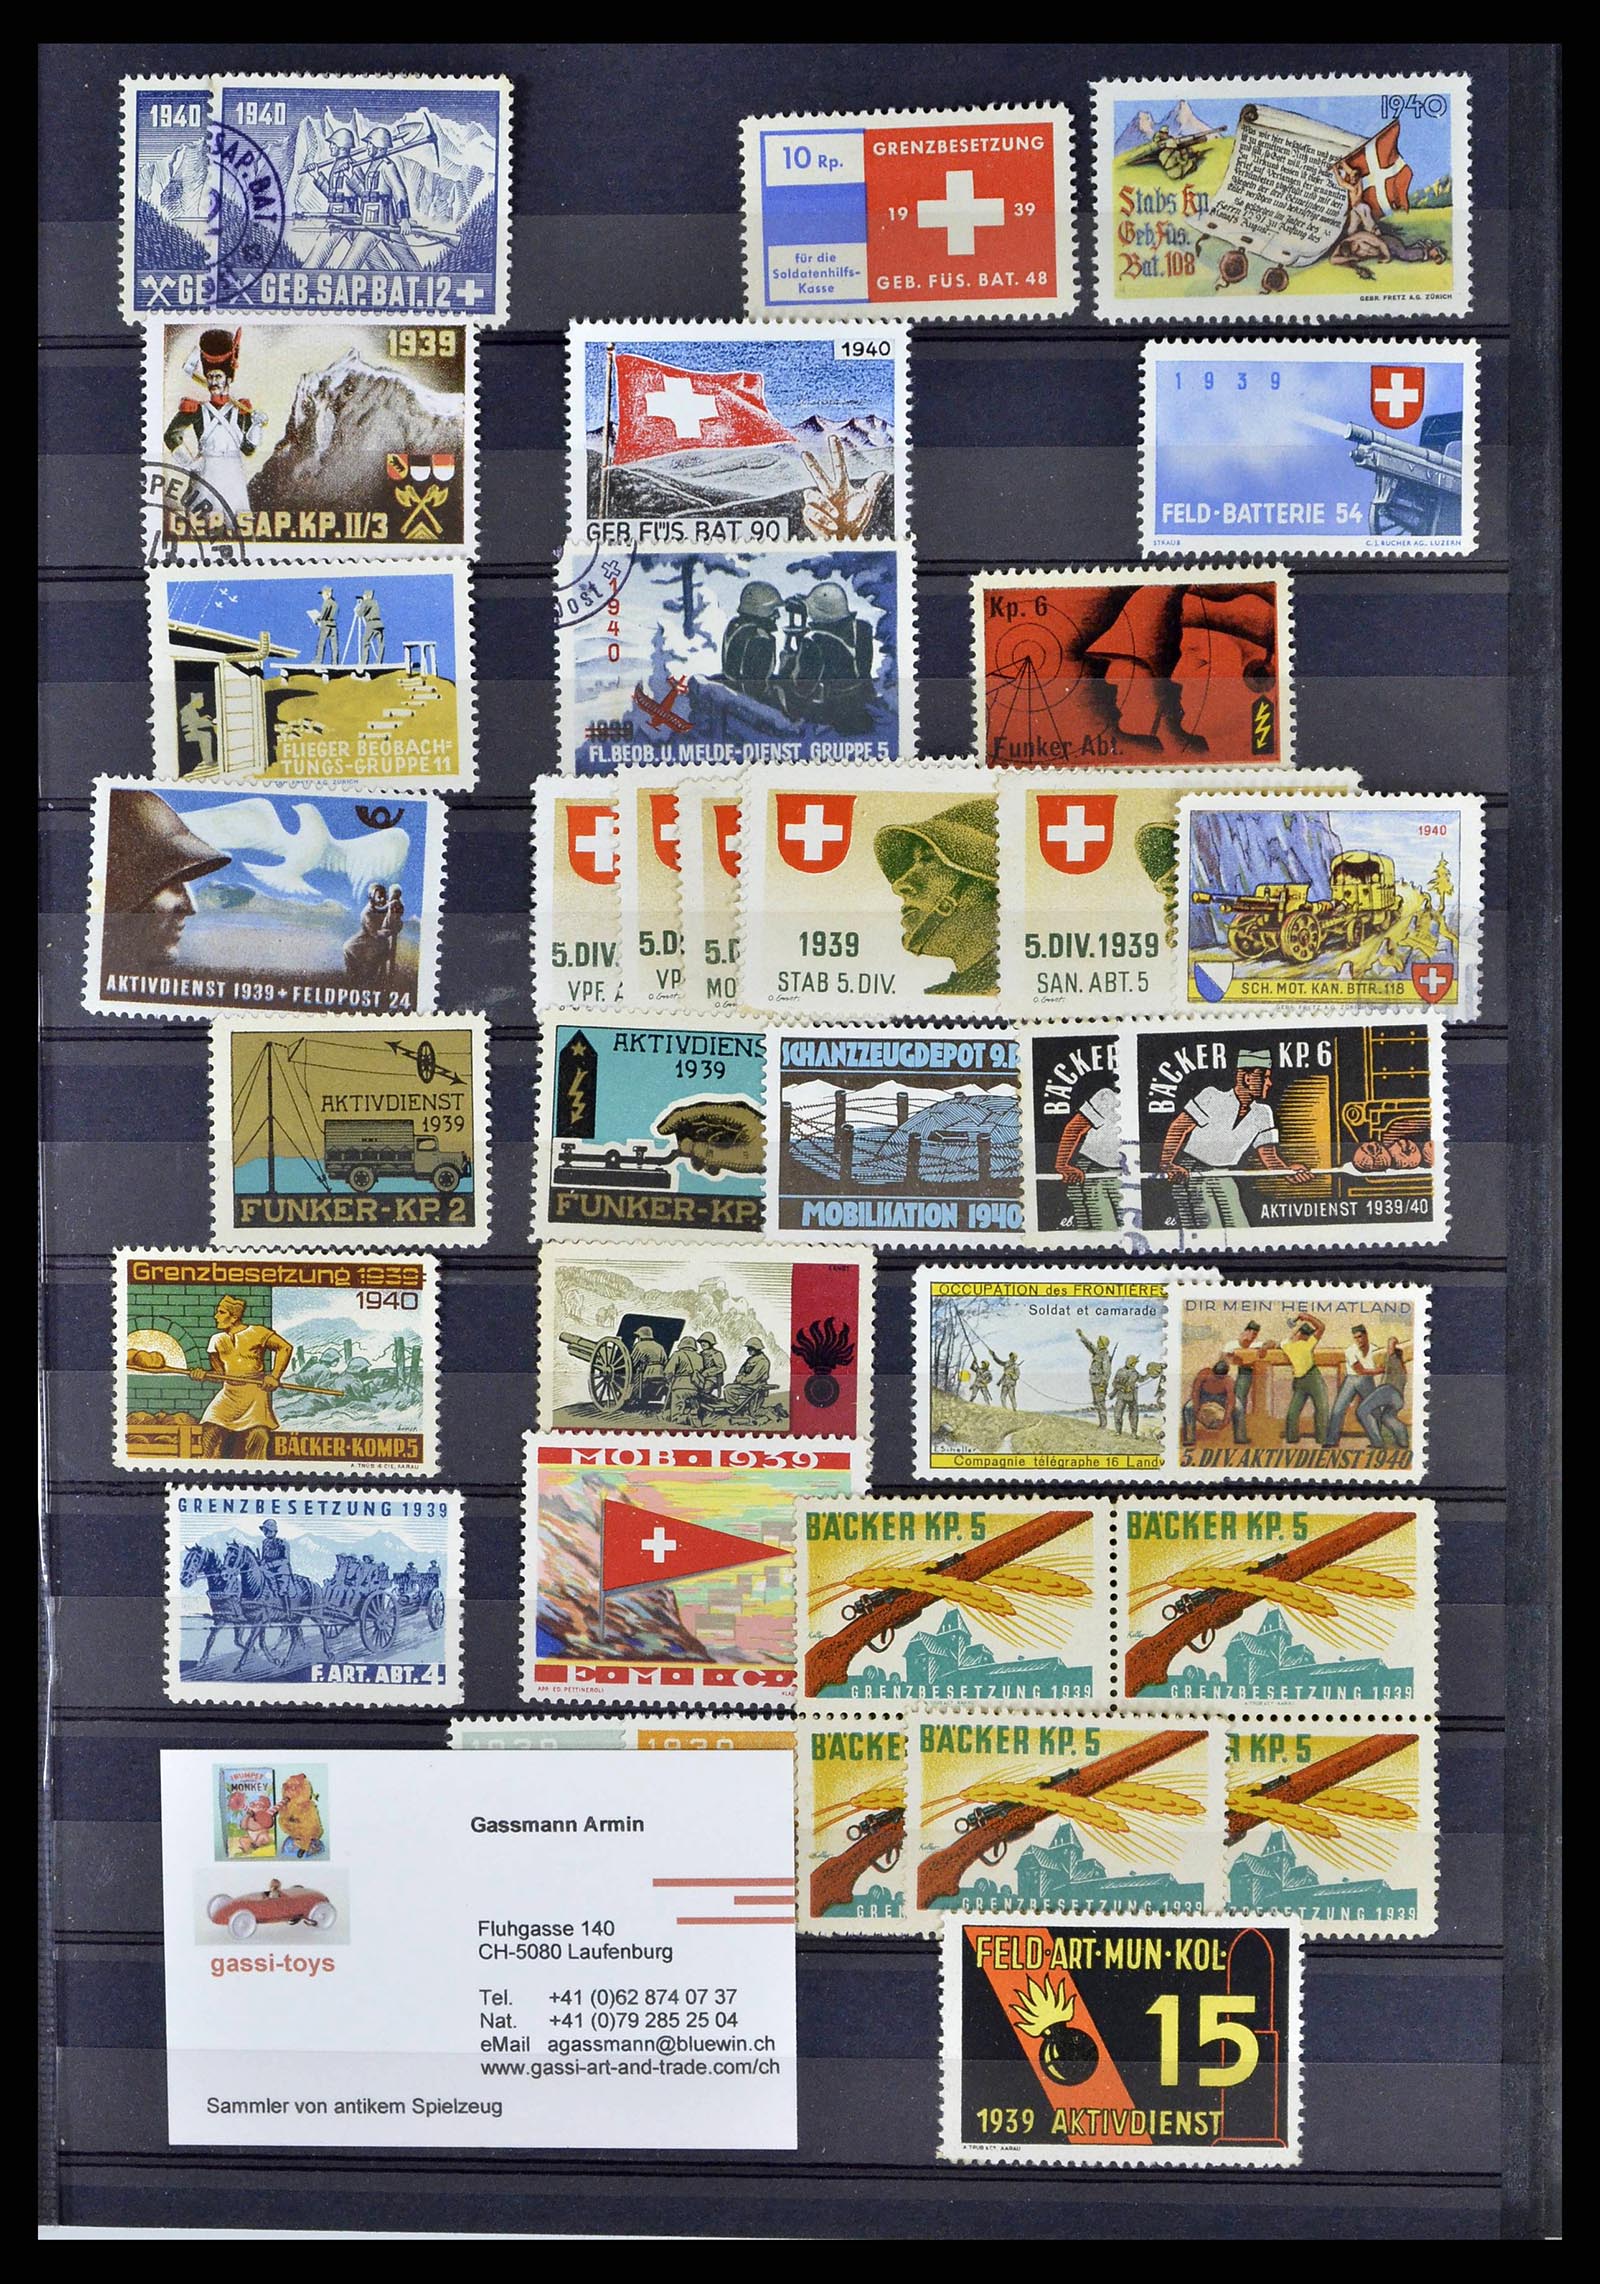 38768 0020 - Stamp collection 38768 Switzerland soldierstamps 1914-1945.